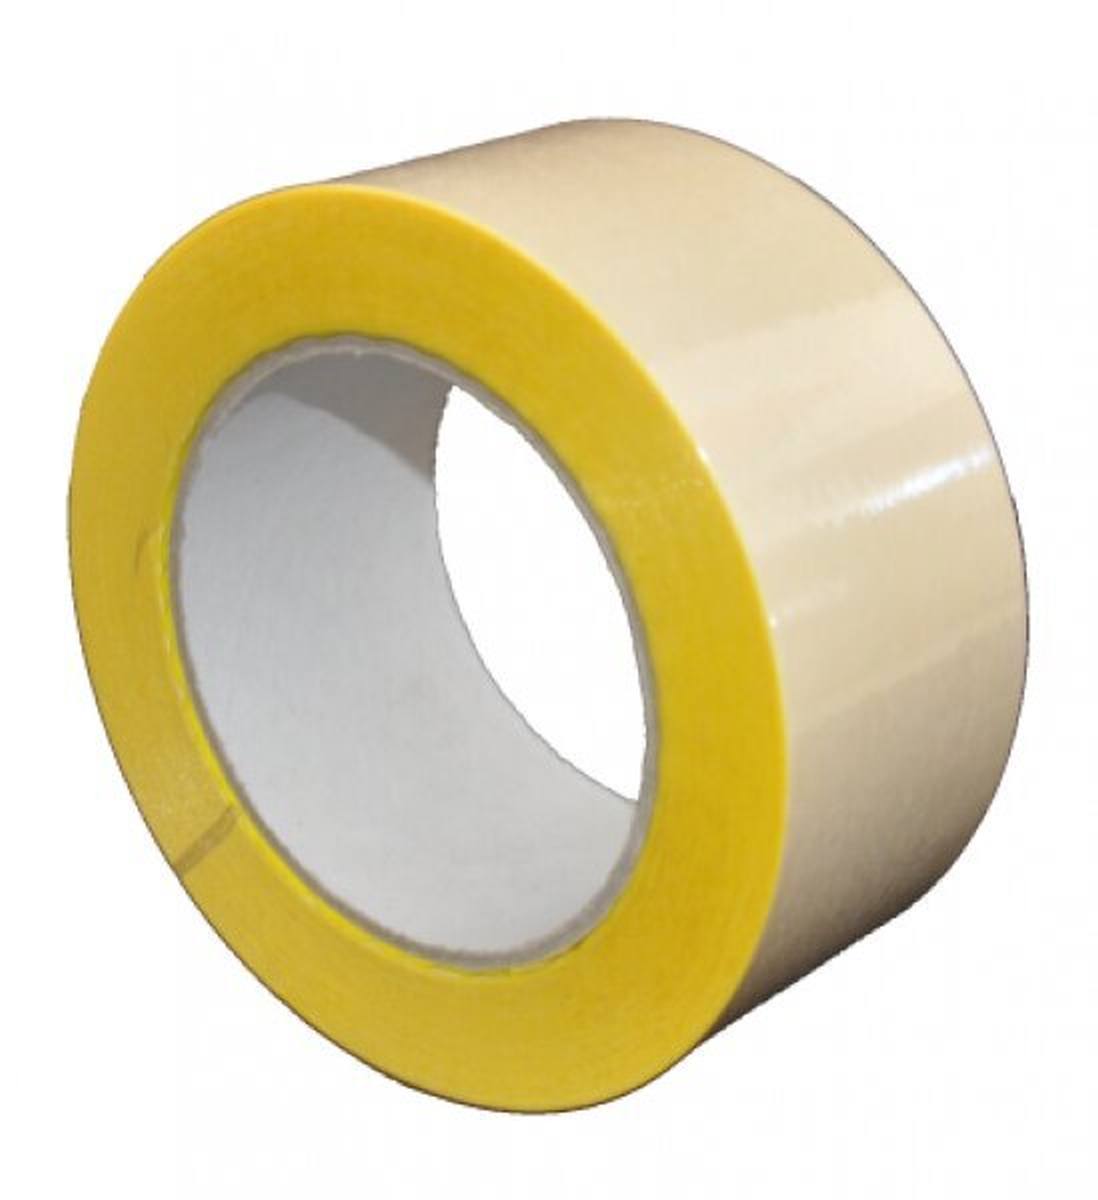 S-K-S 407 Cinta adhesiva de doble cara con soporte de polipropileno, alta / baja adhesividad, amarilla, 250 mm x 50 m, 0,15 mm